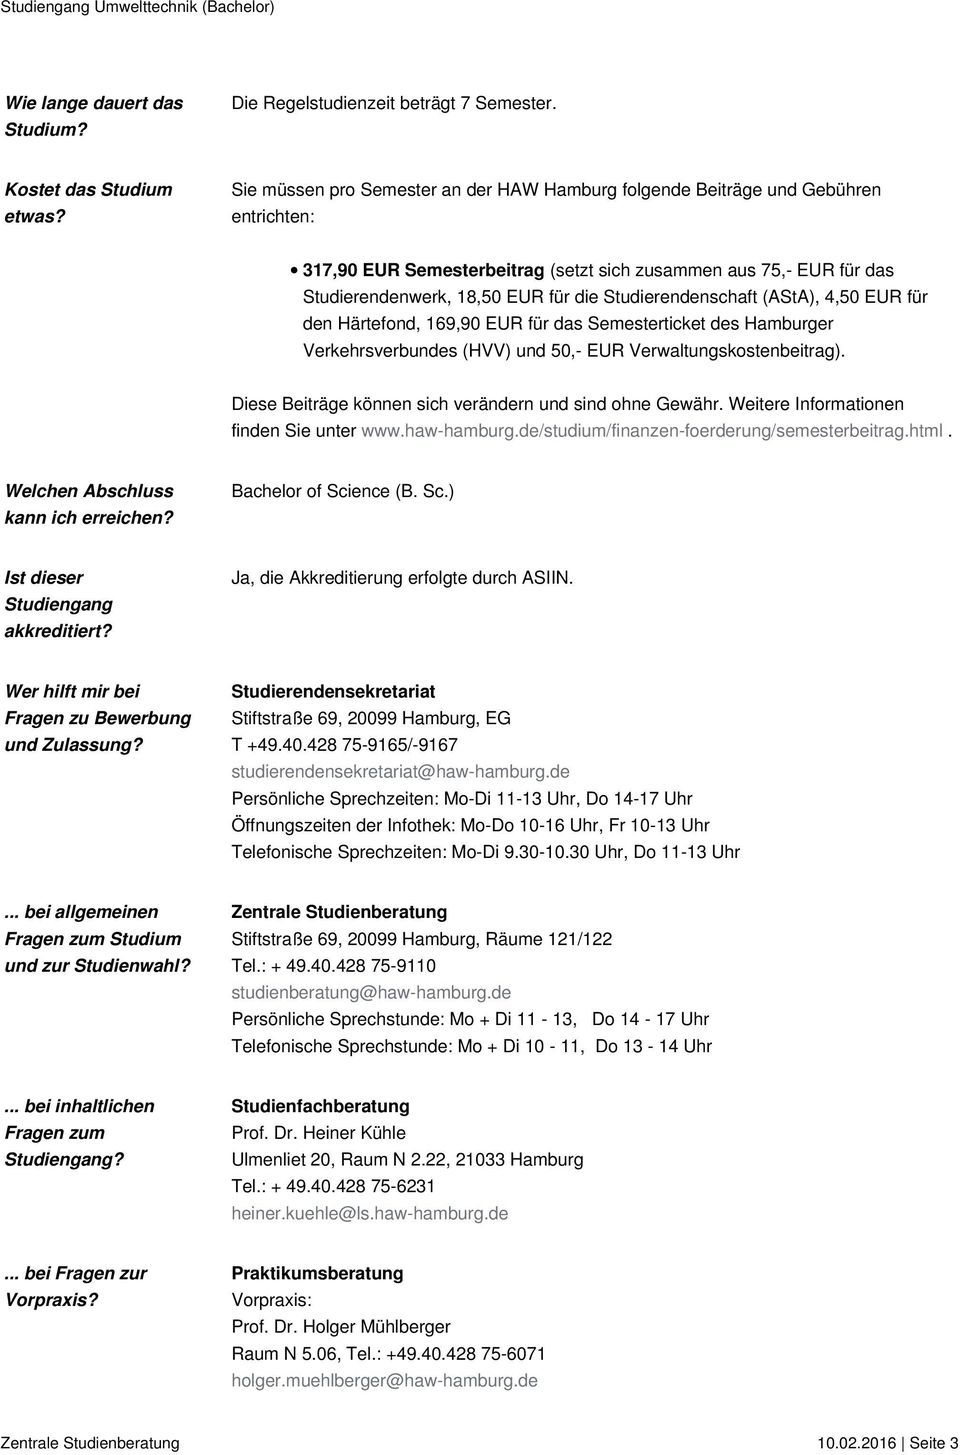 Studierendenschaft (AStA), 4,50 EUR für den Härtefond, 169,90 EUR für das Semesterticket des Hamburger Verkehrsverbundes (HVV) und 50,- EUR Verwaltungskostenbeitrag).